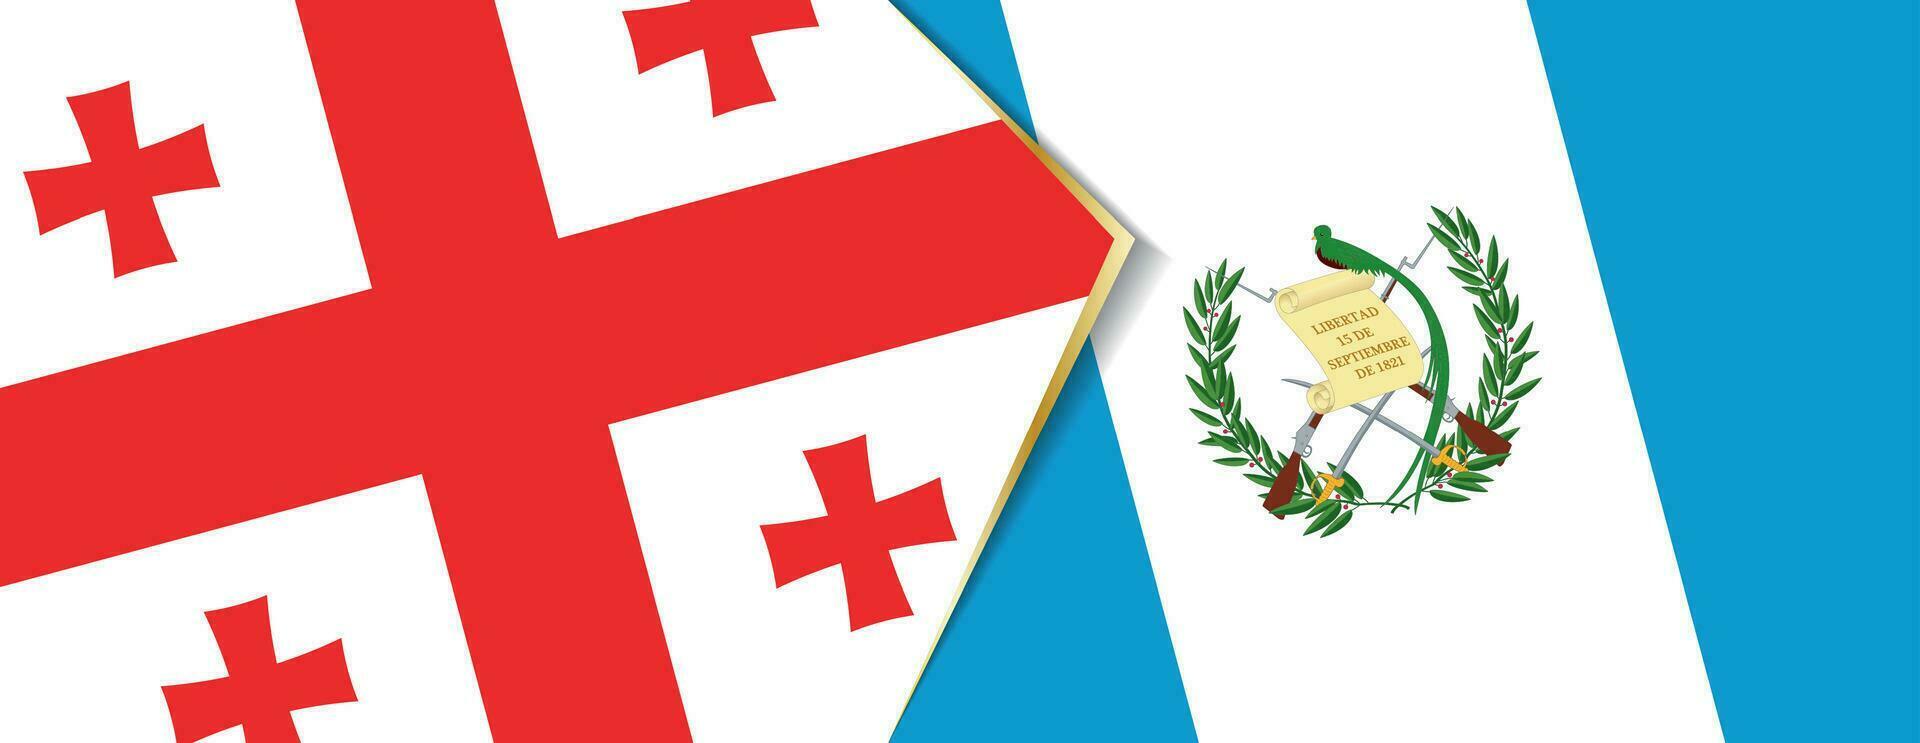 Georgia y Guatemala banderas, dos vector banderas